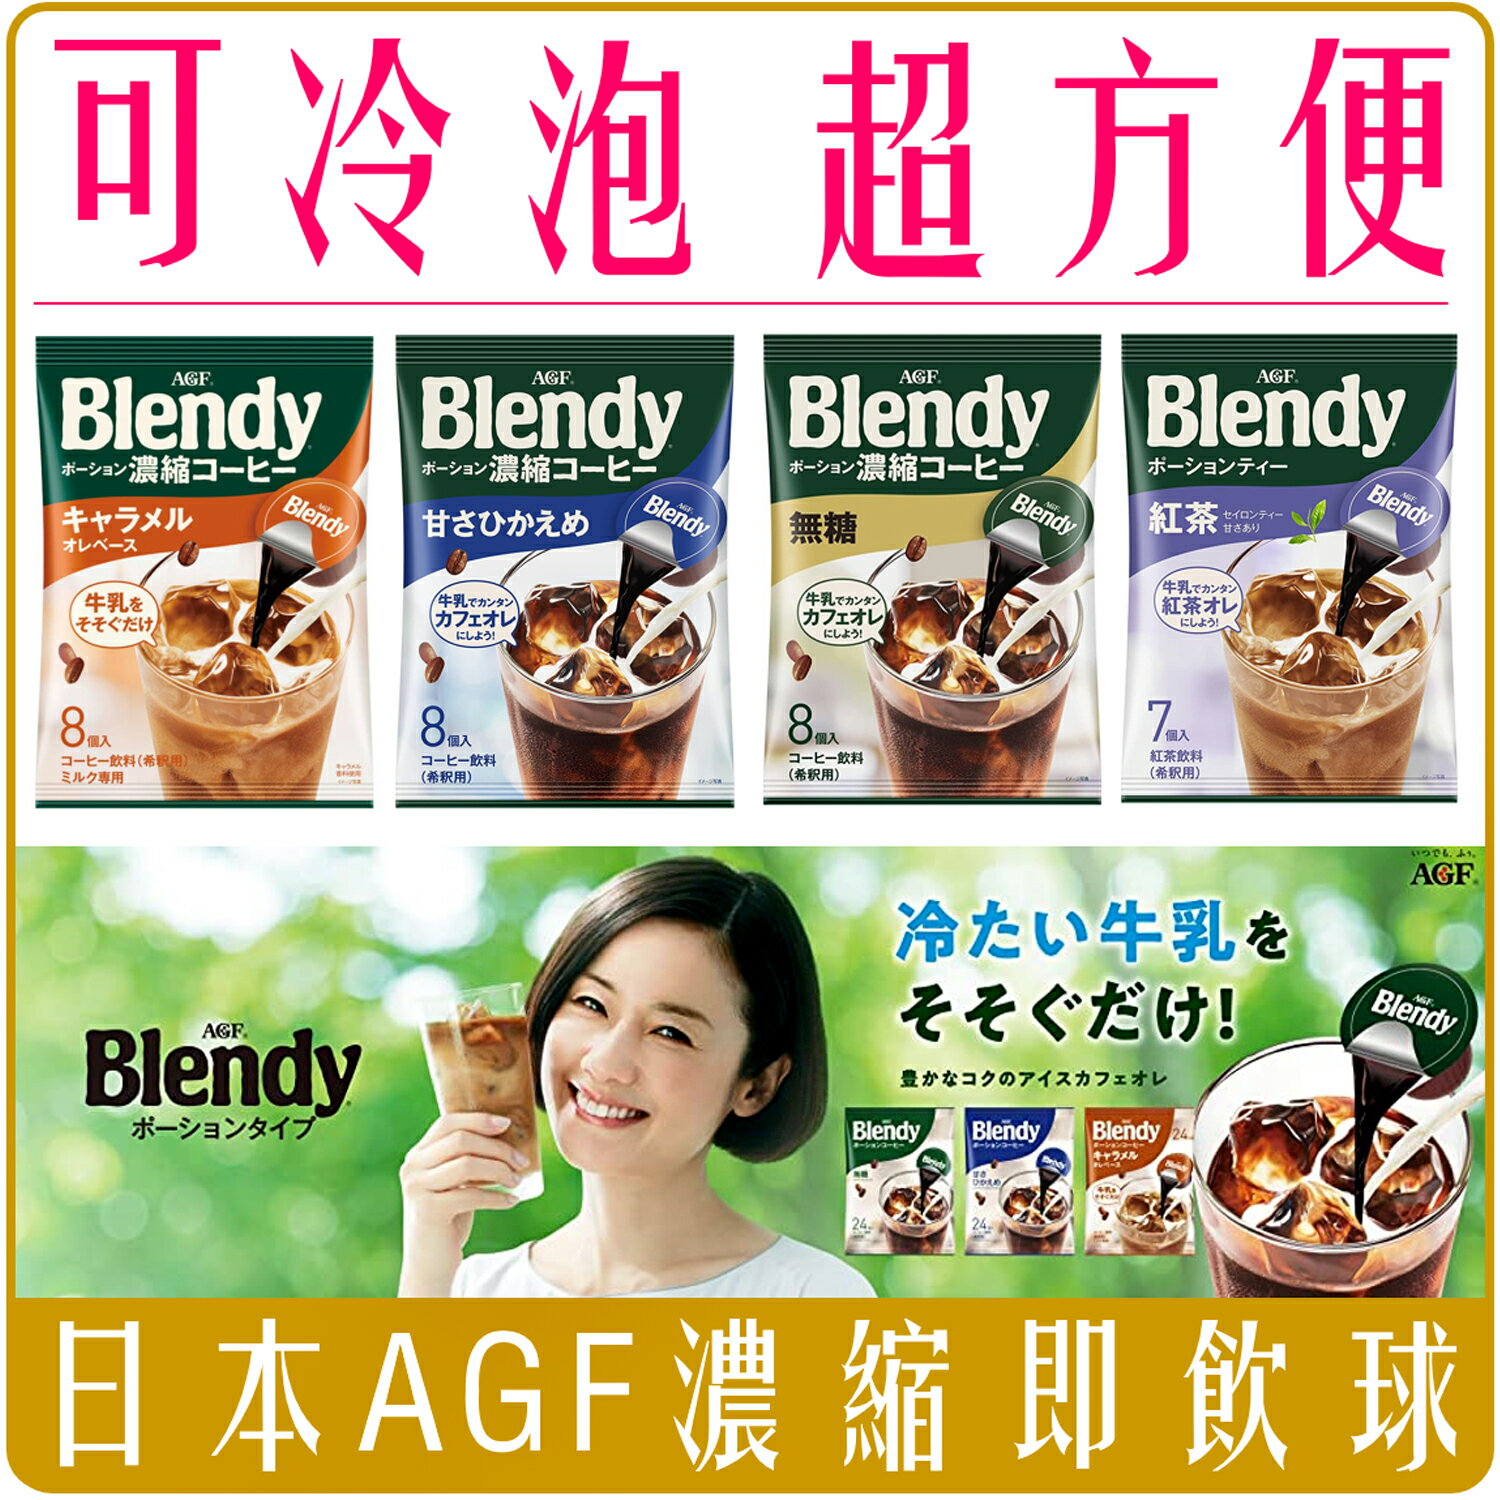 《 Chara 微百貨 》 日本 AGF Blendy 咖啡球 濃縮液 濃縮咖啡 膠囊球 咖啡 即飲球 紅茶